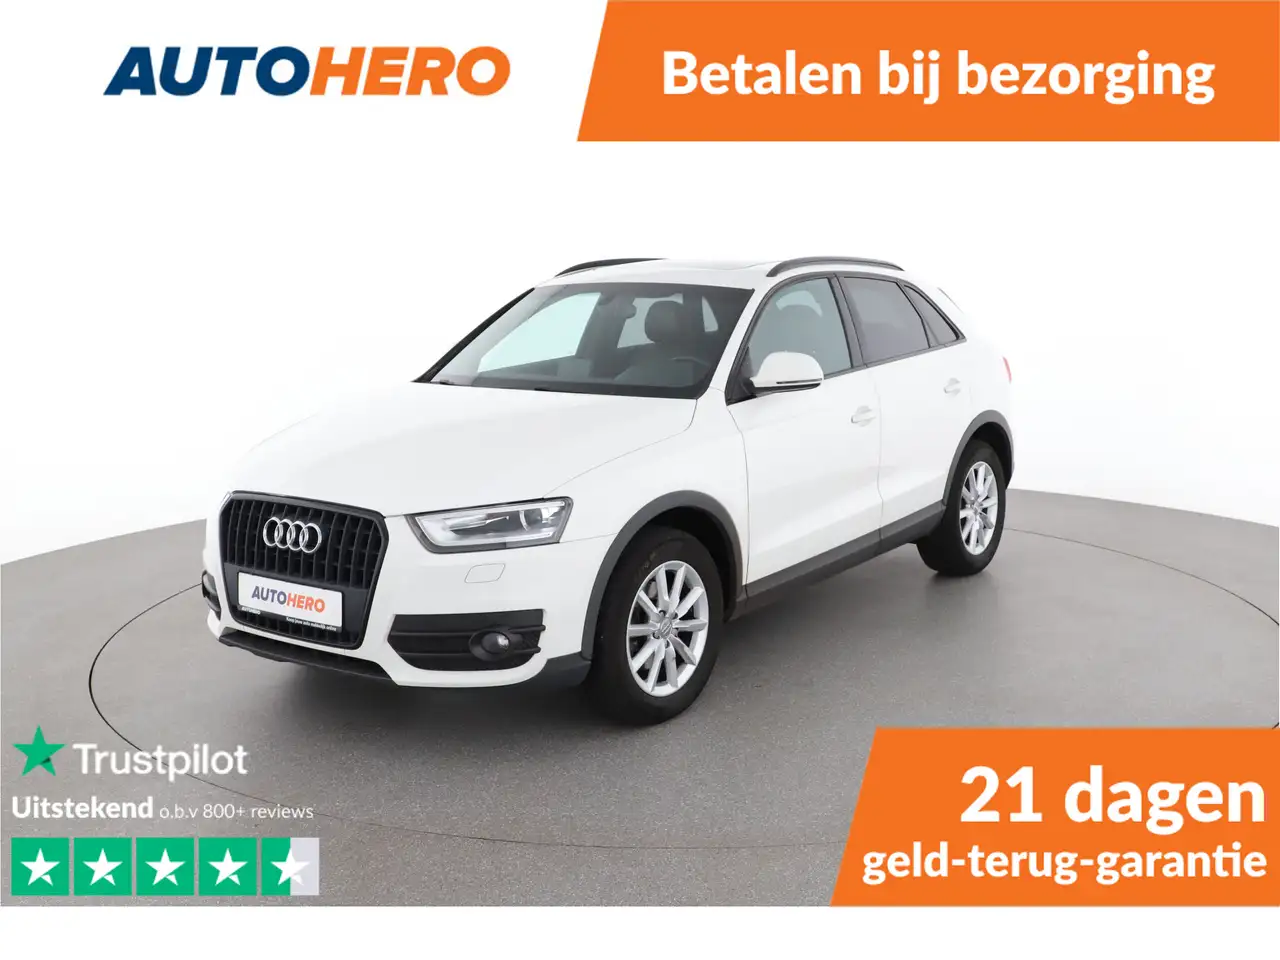 Audi Q3 SUV/4x4/Pick-up in Wit tweedehands in AMSTERDAM voor € 16.249,-